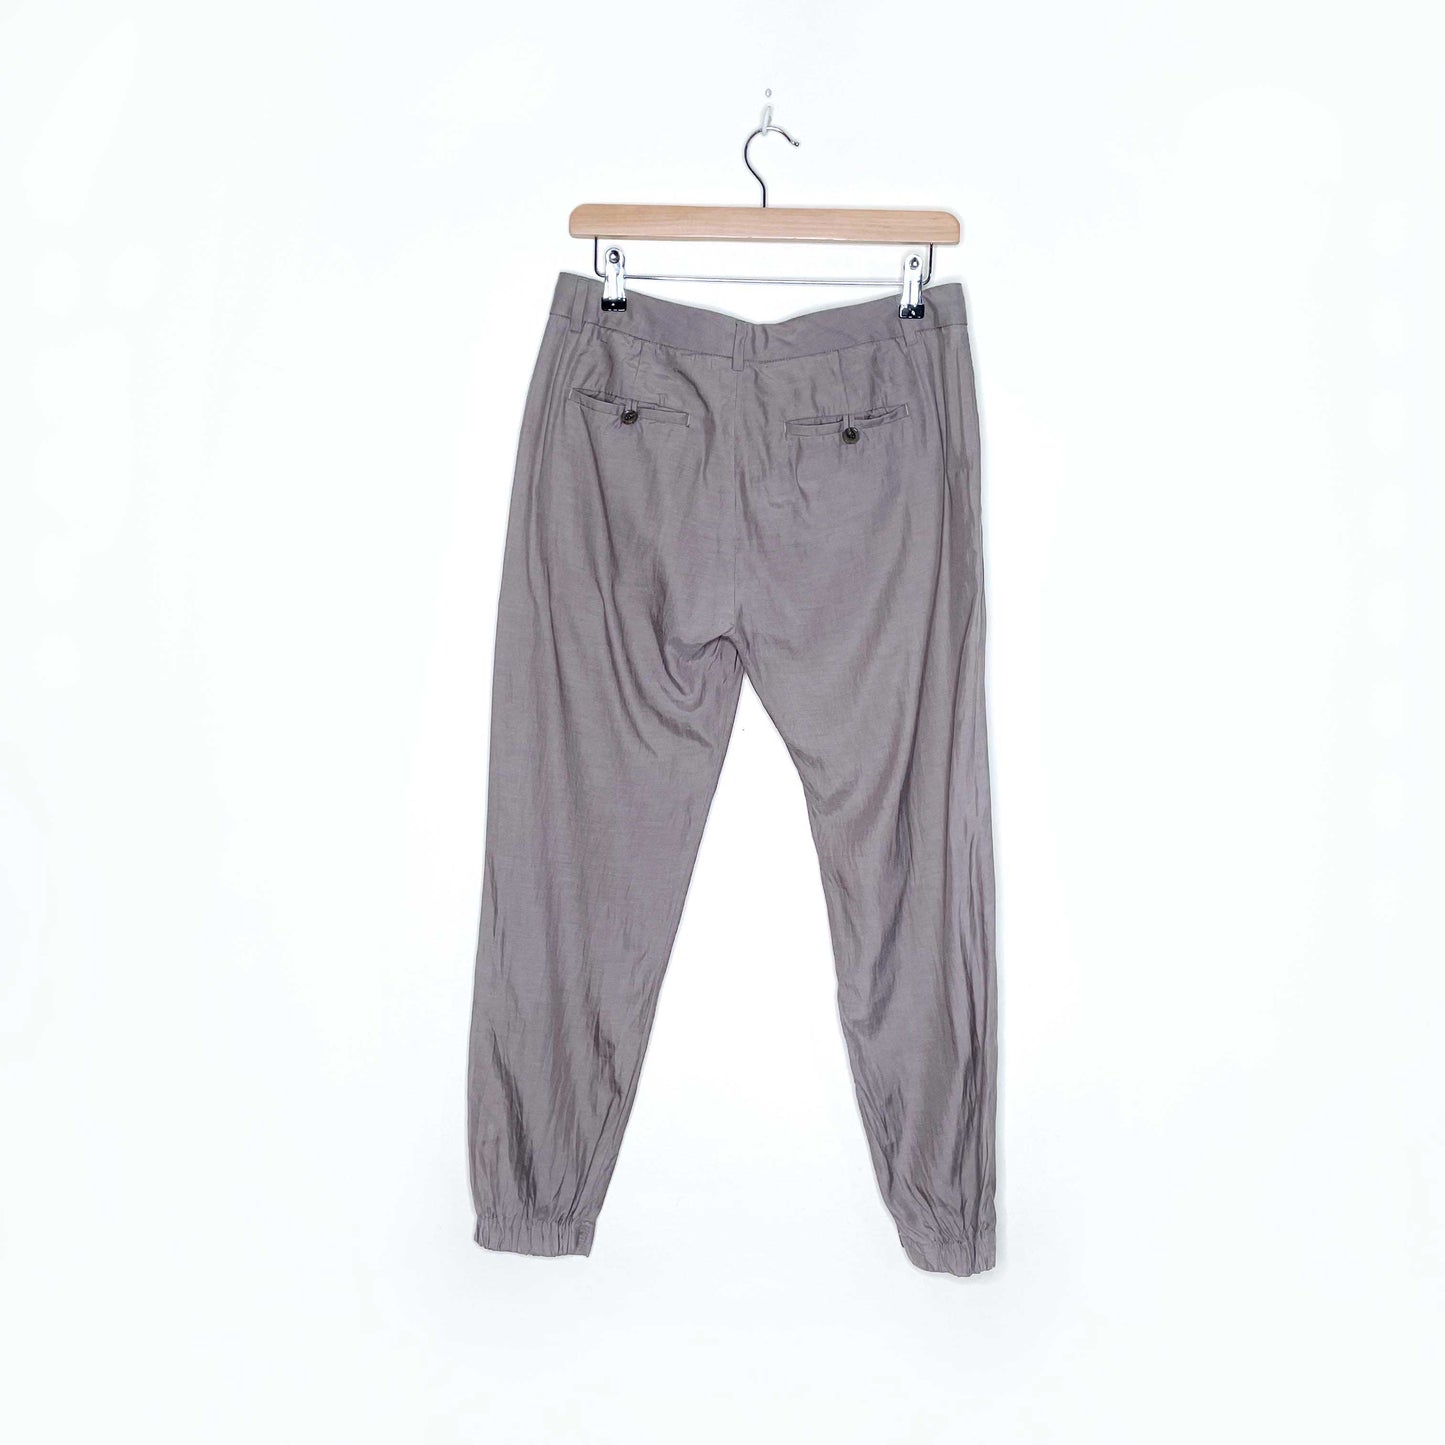 vince grey cupro-cotton trouser joggers - size 2